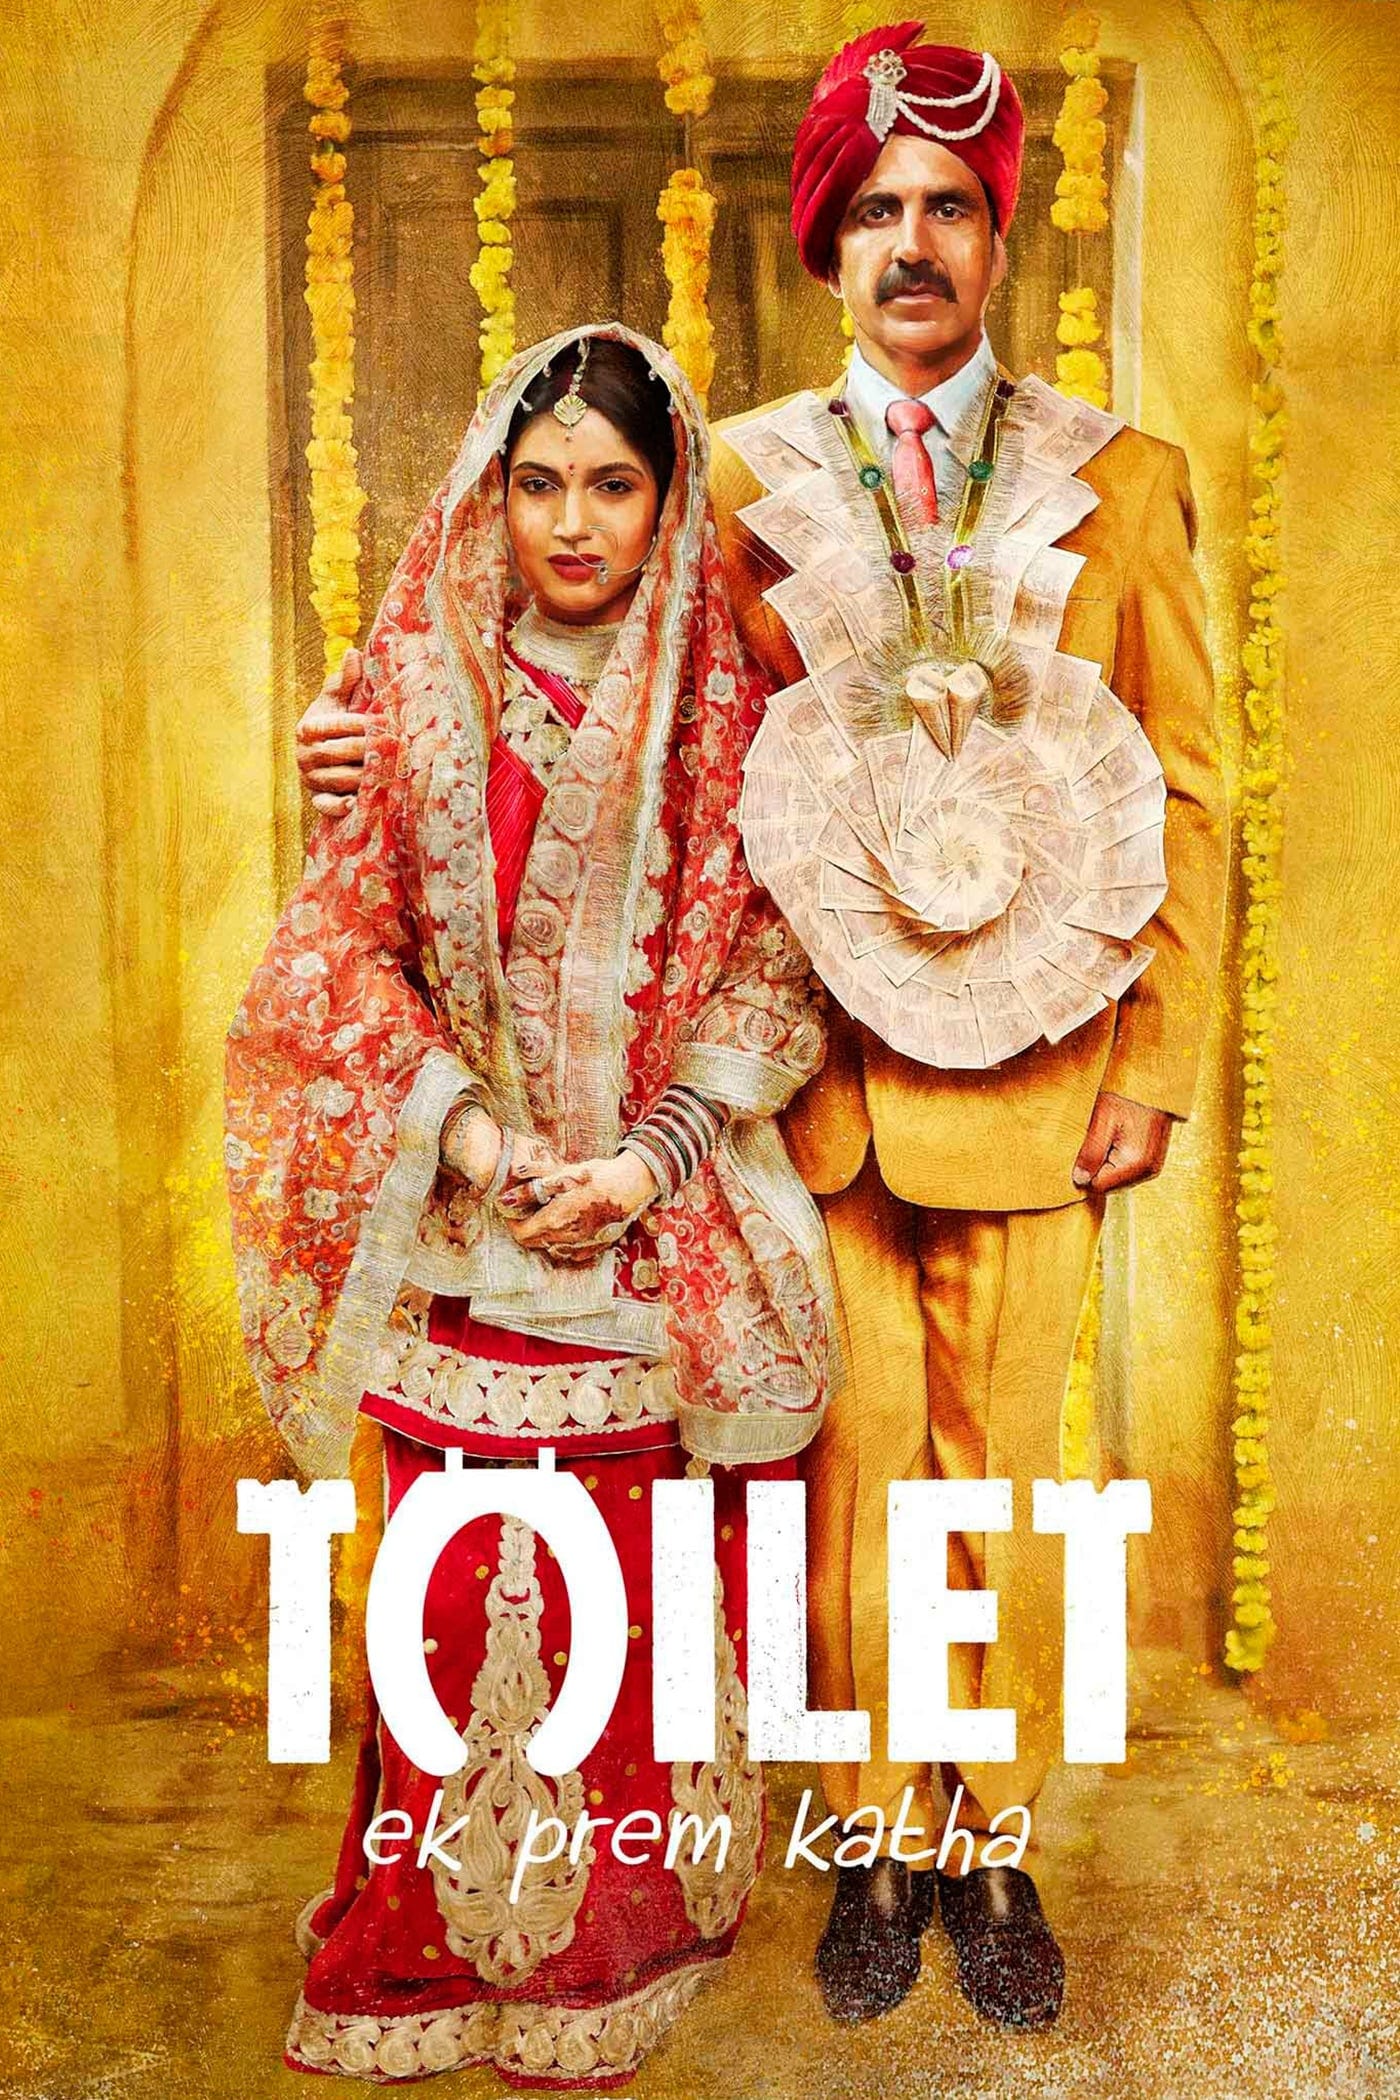 Poster for the movie "Toilet - Ek Prem Katha"